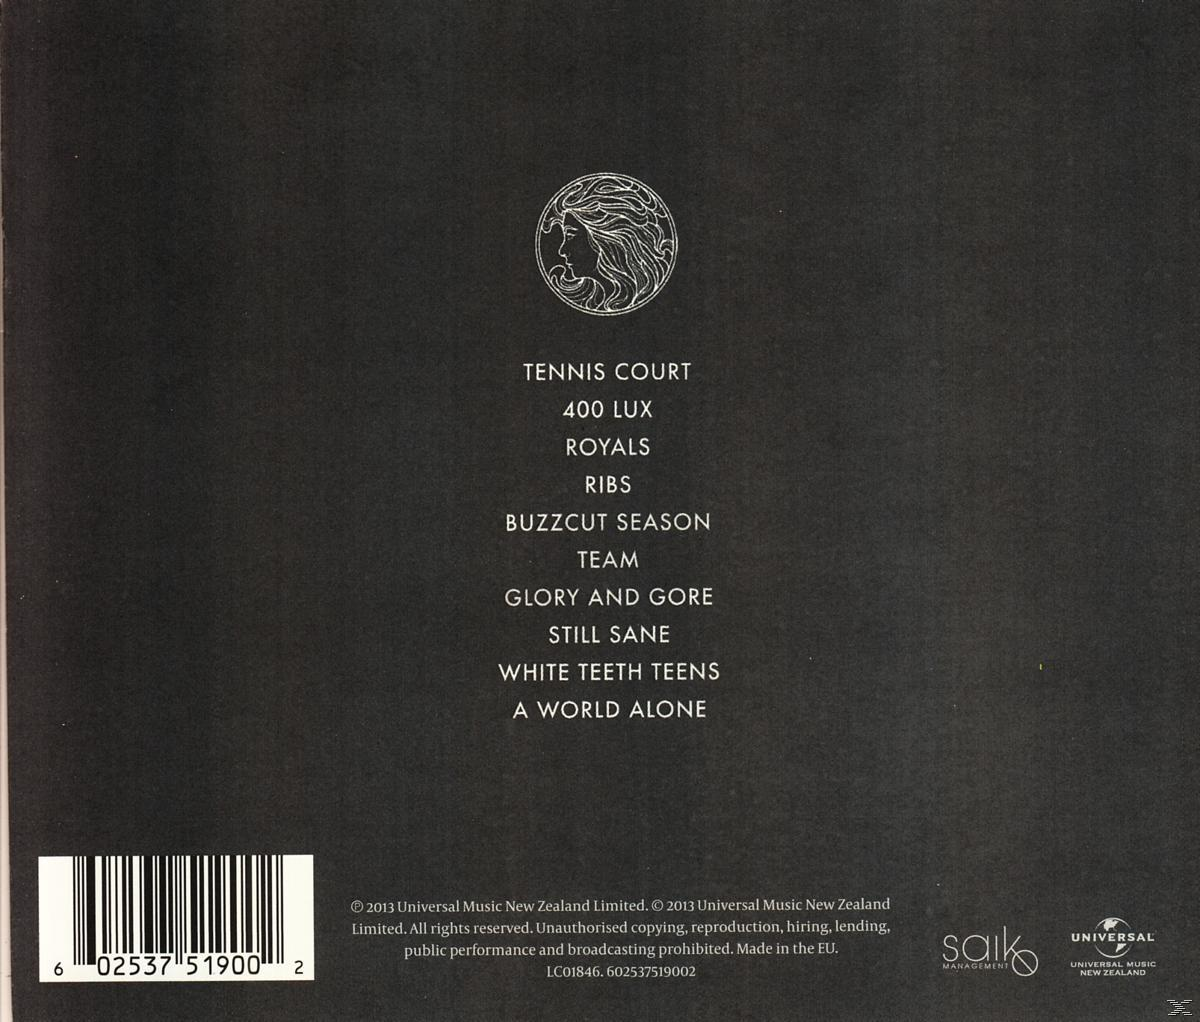 Lorde - Pure Heroine - (CD)